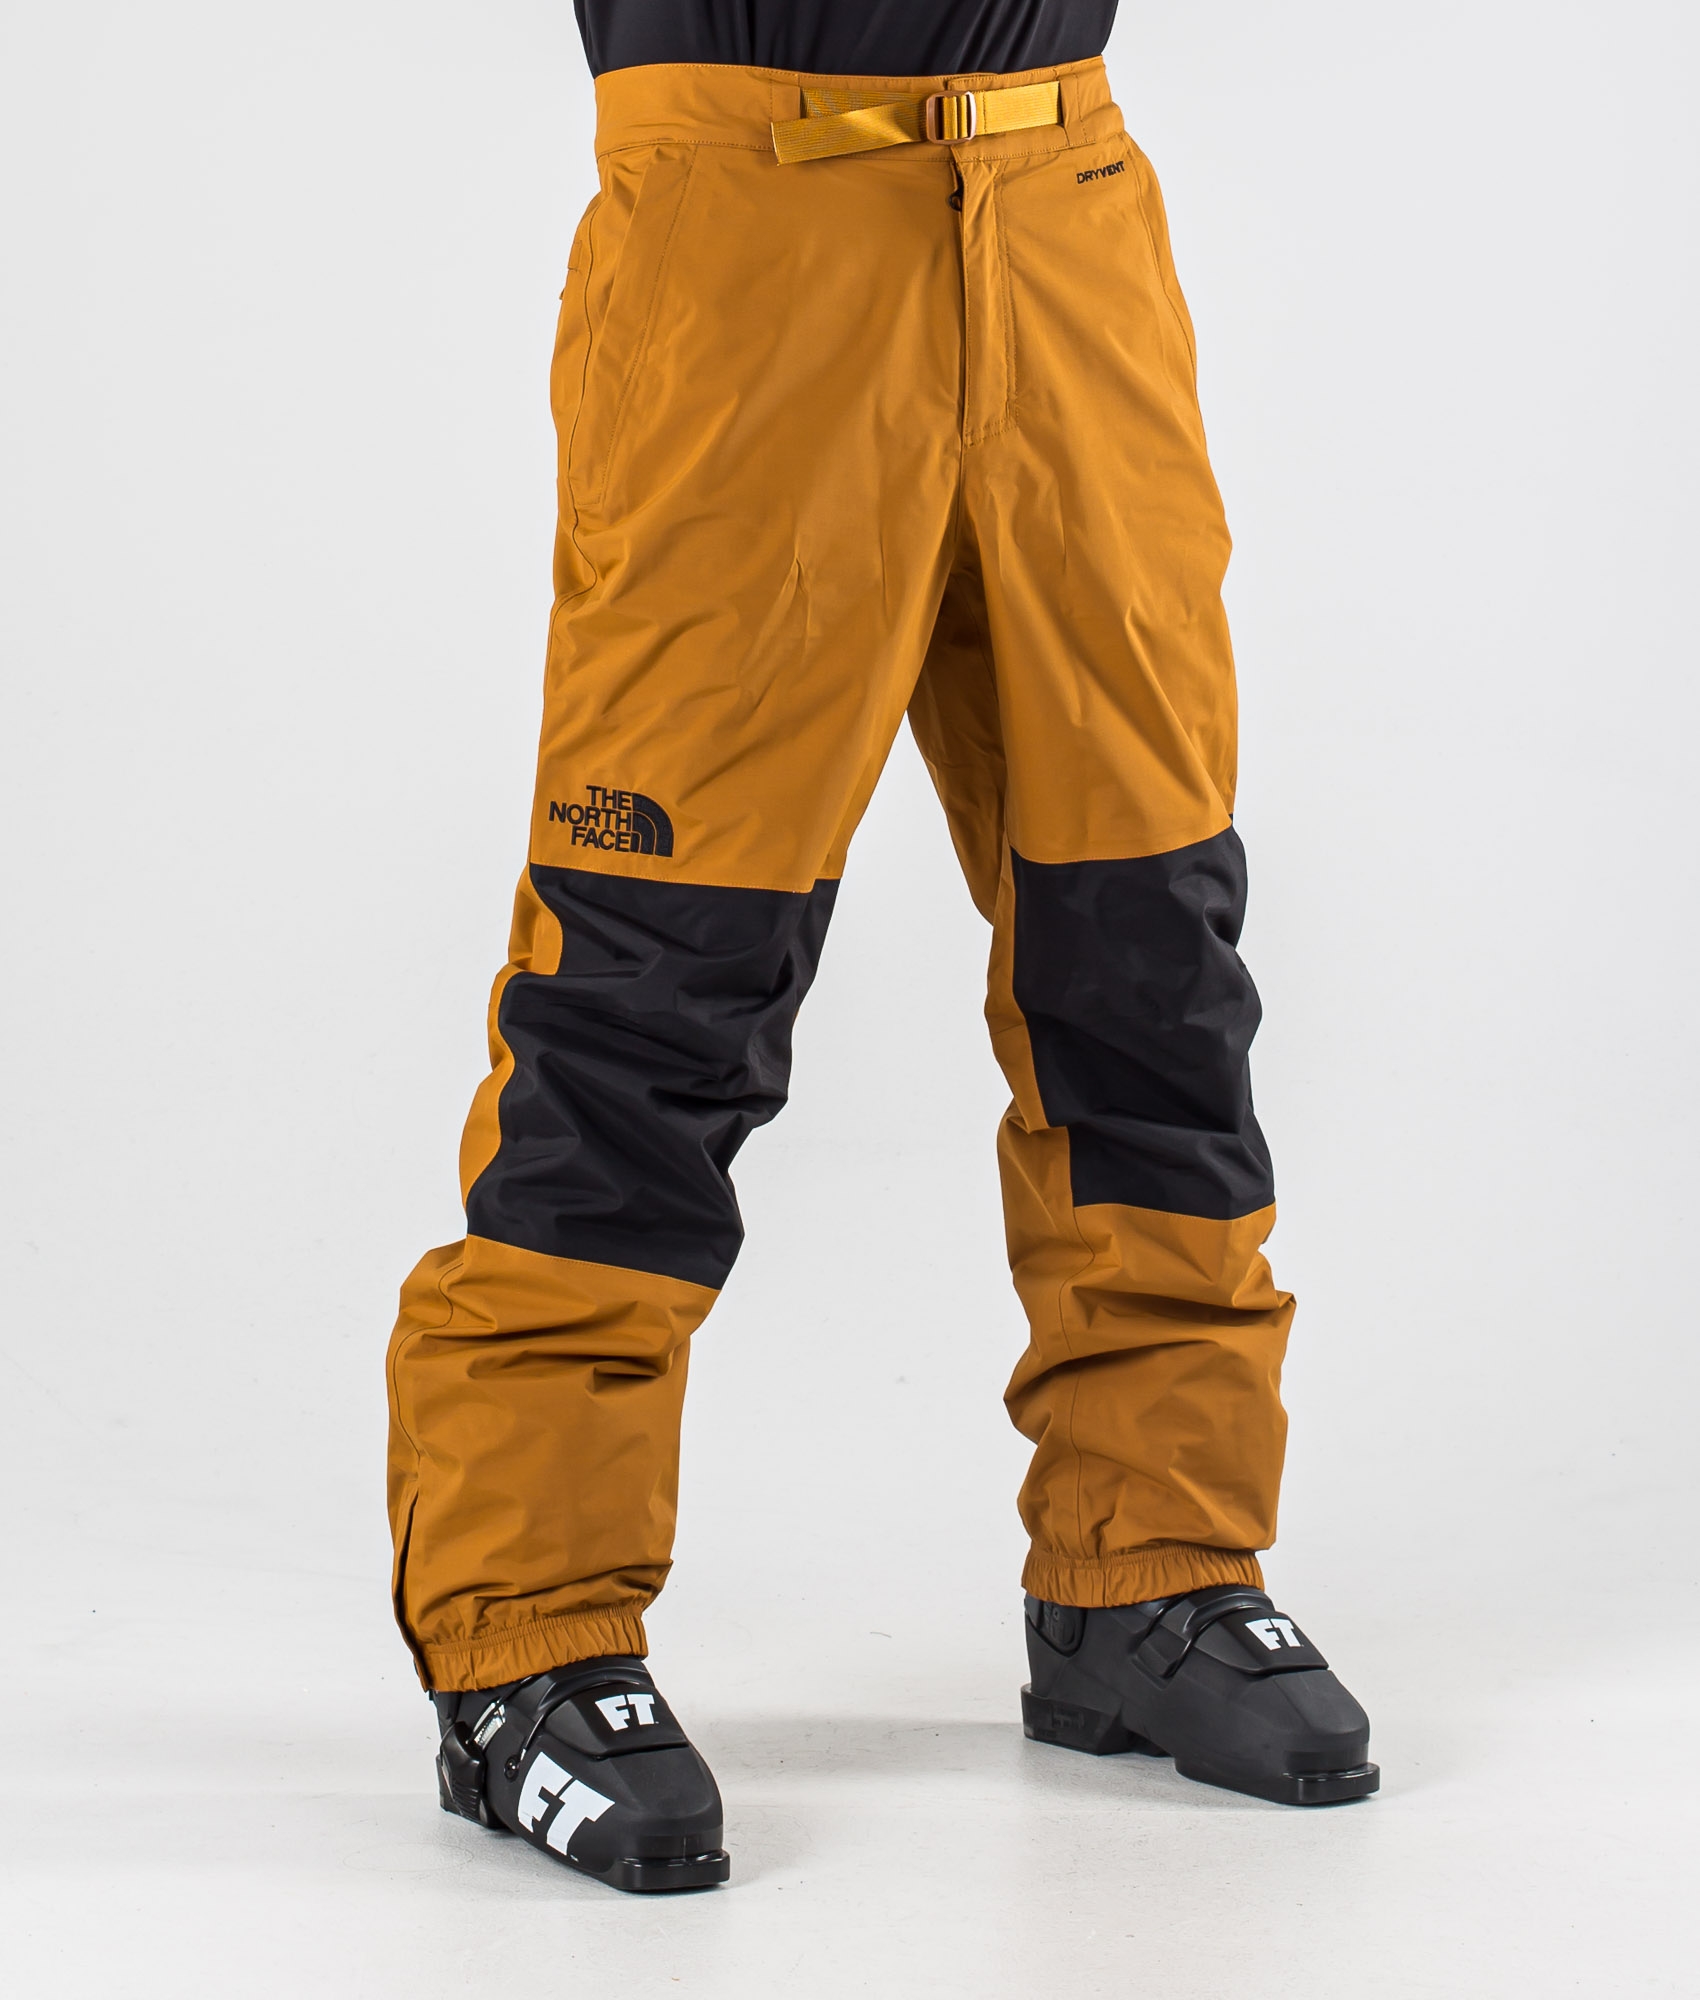 north face ski pants